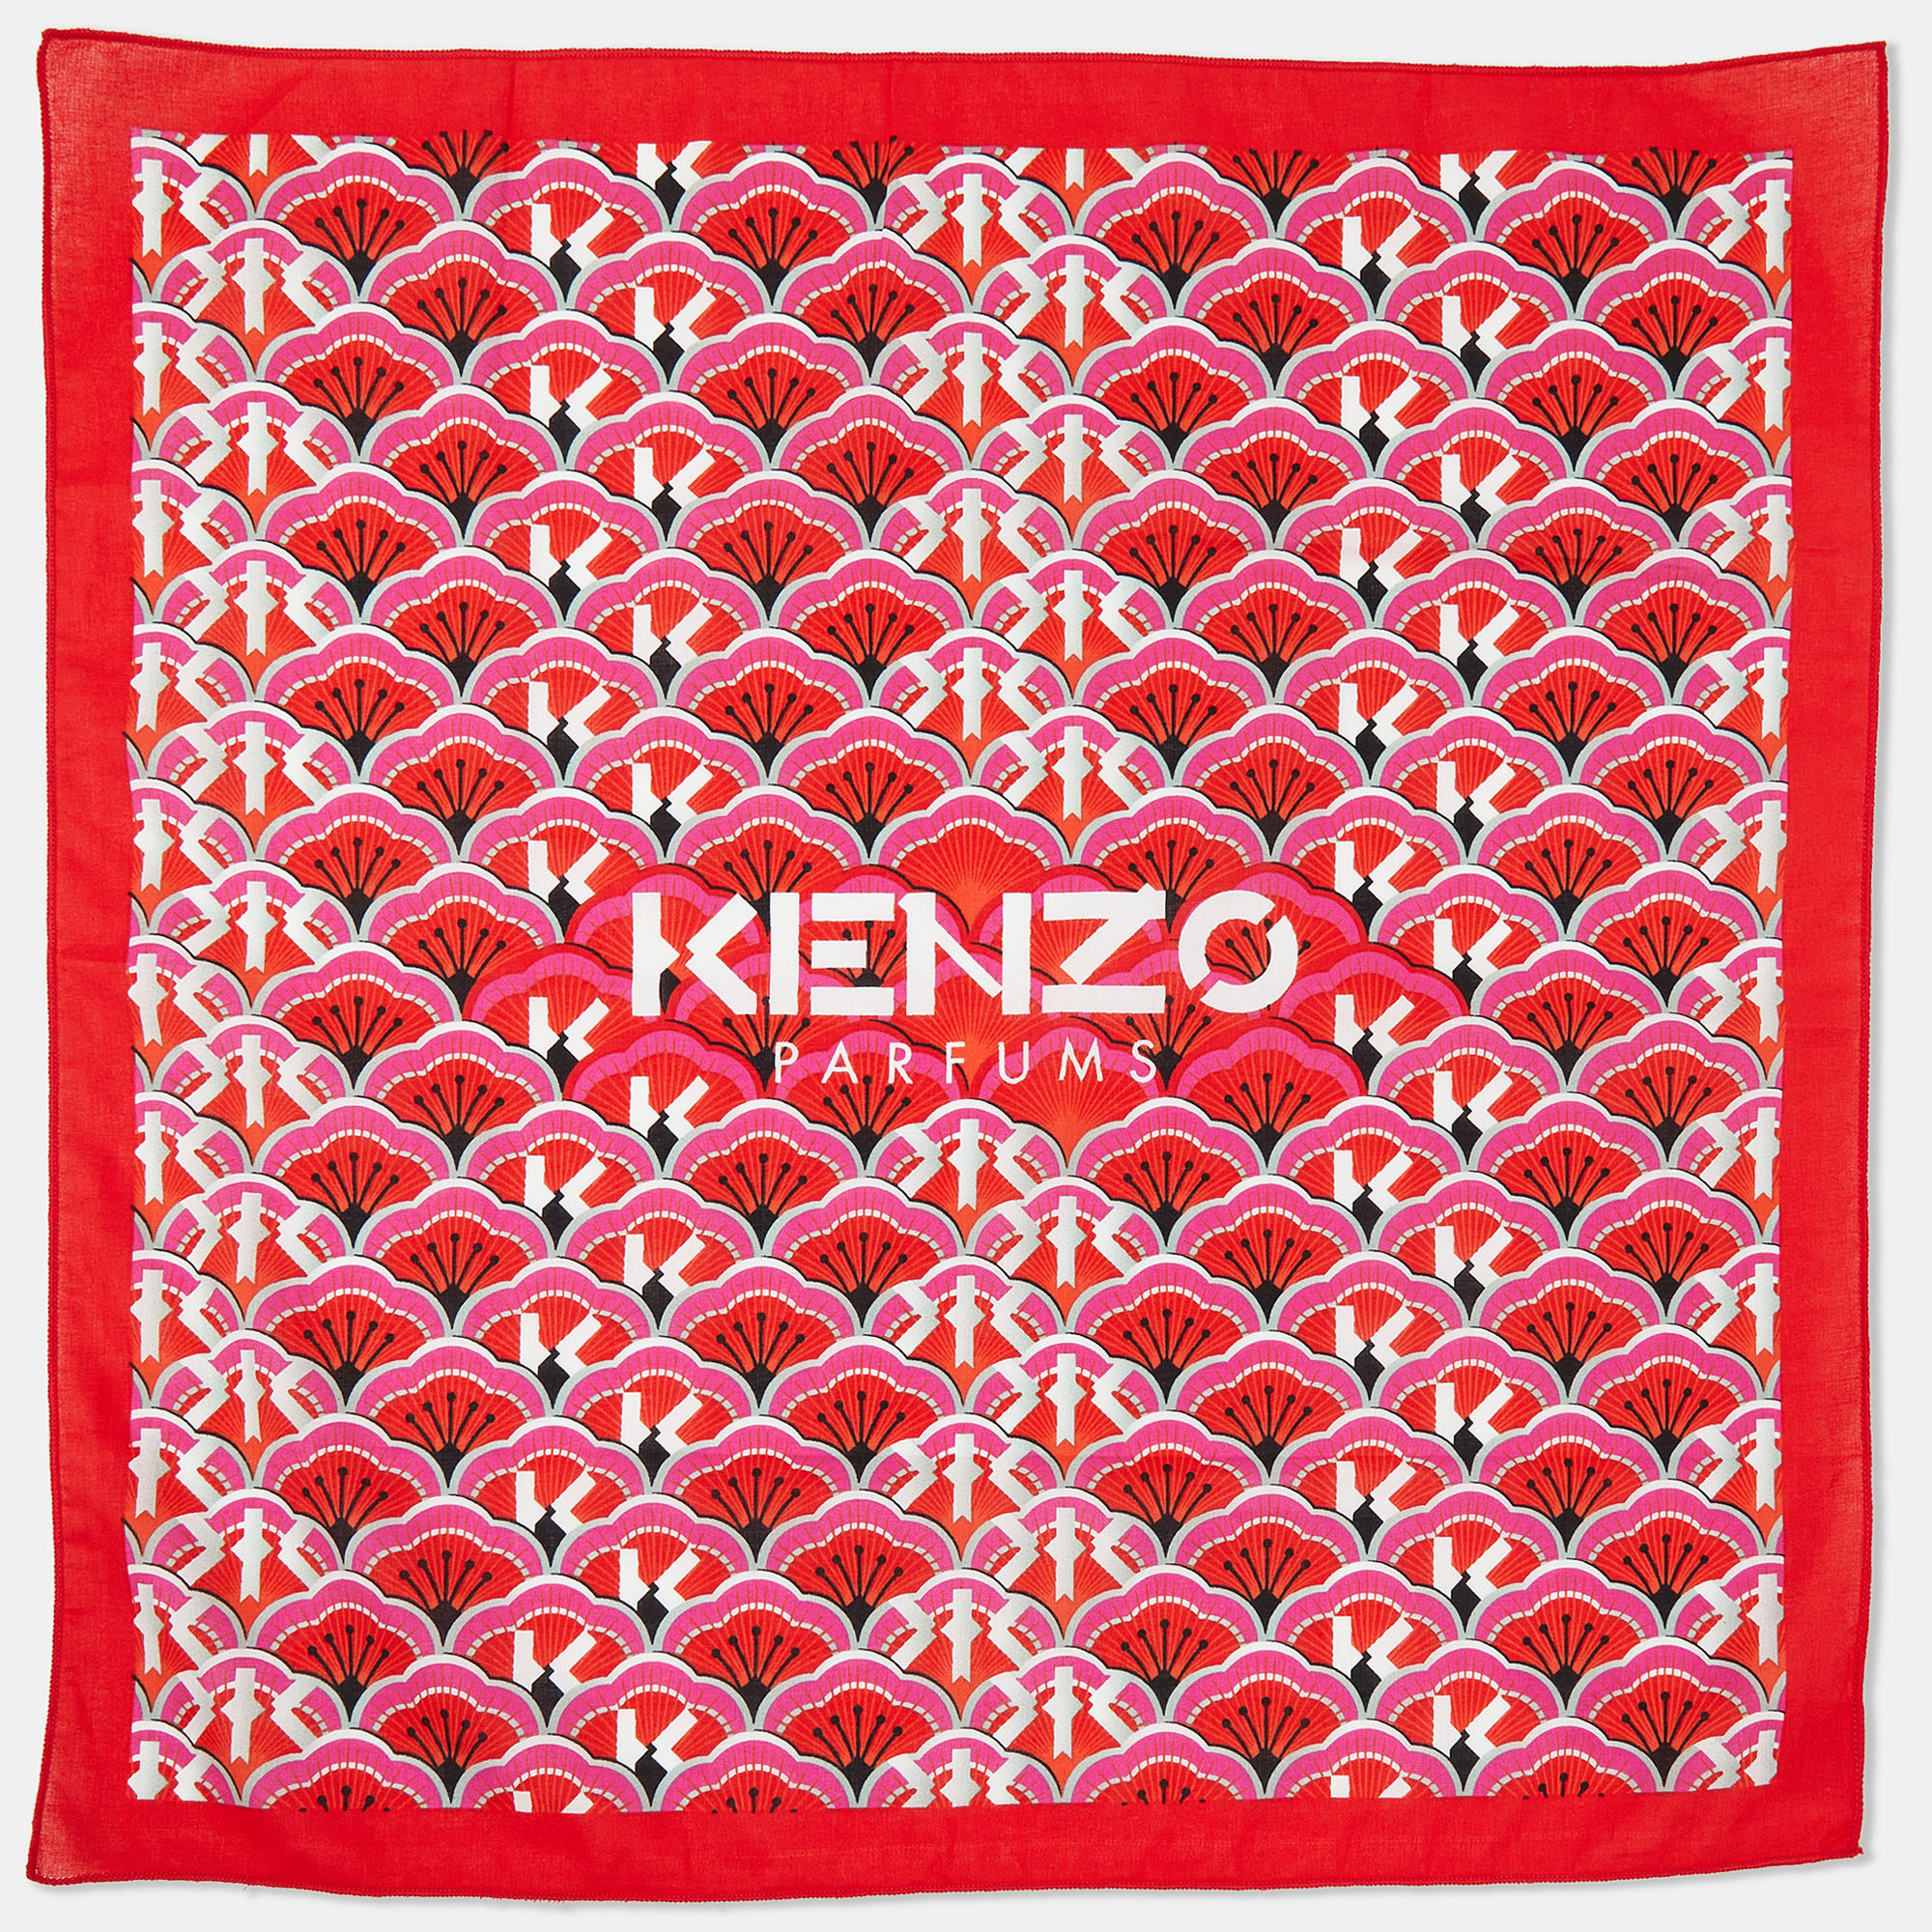 Kenzo Red All-Over Print Cotton Square Neckerchief